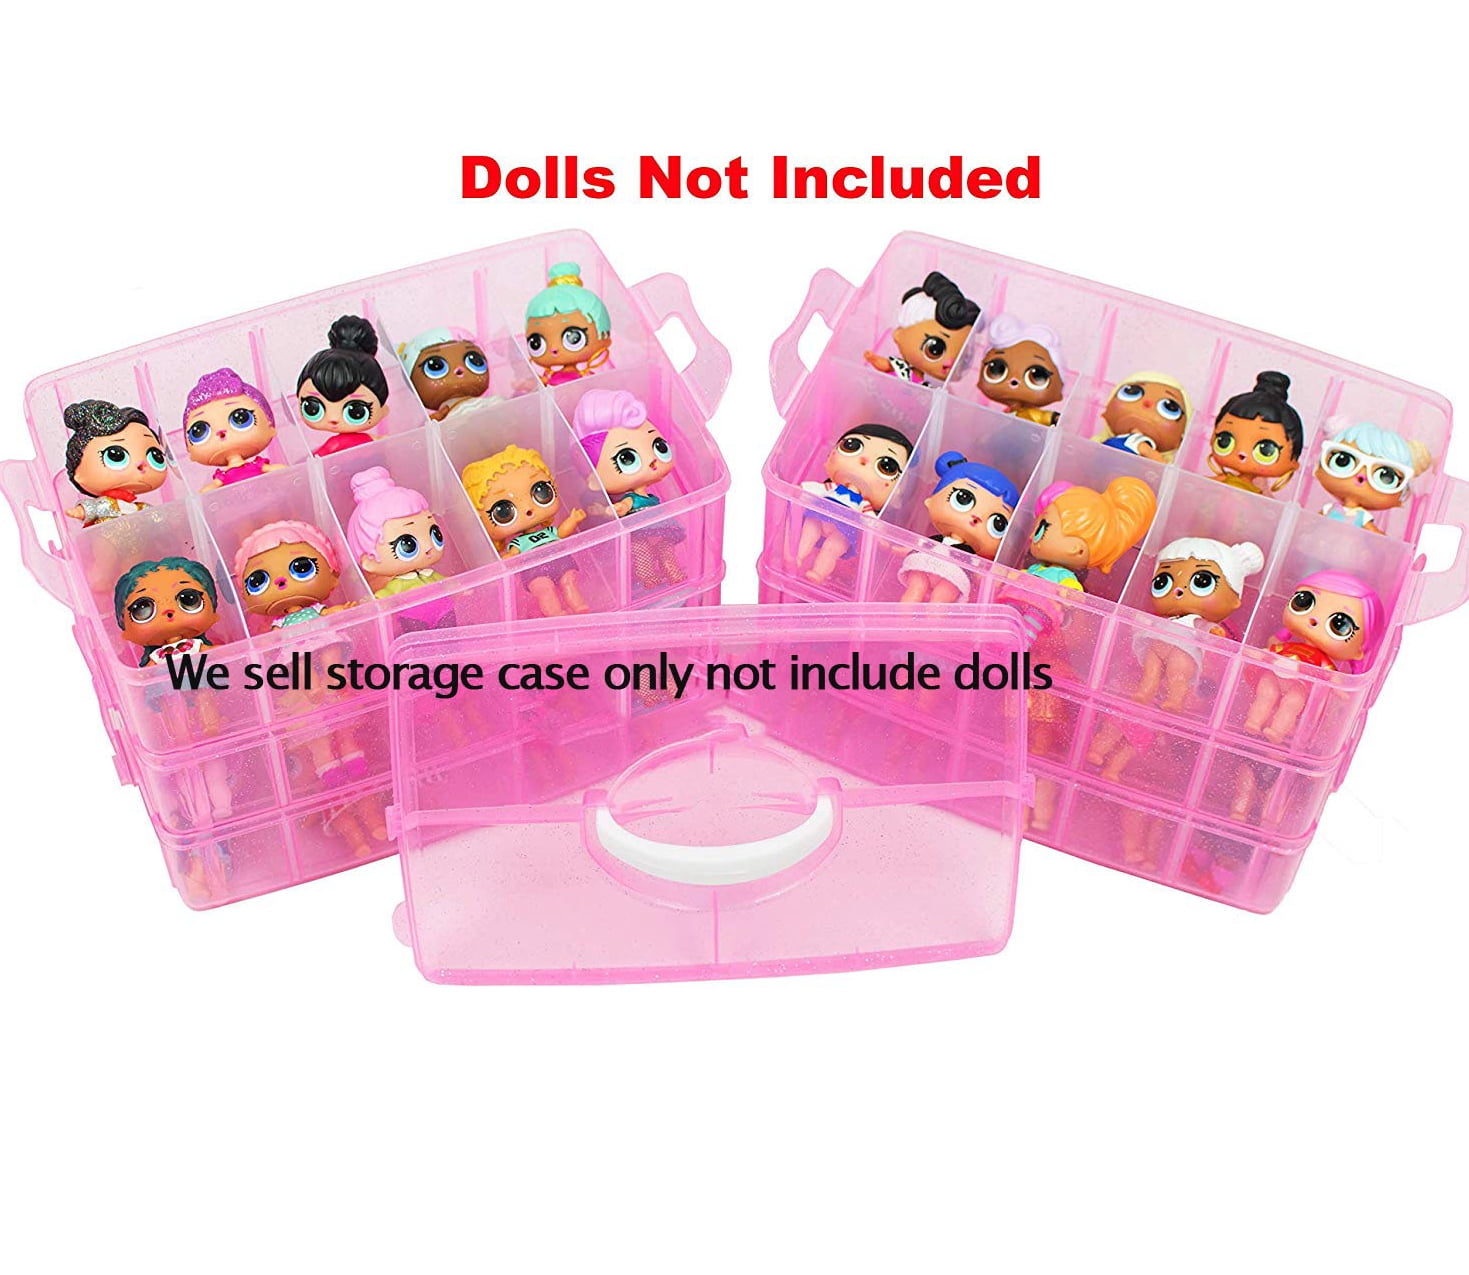 doll storage case